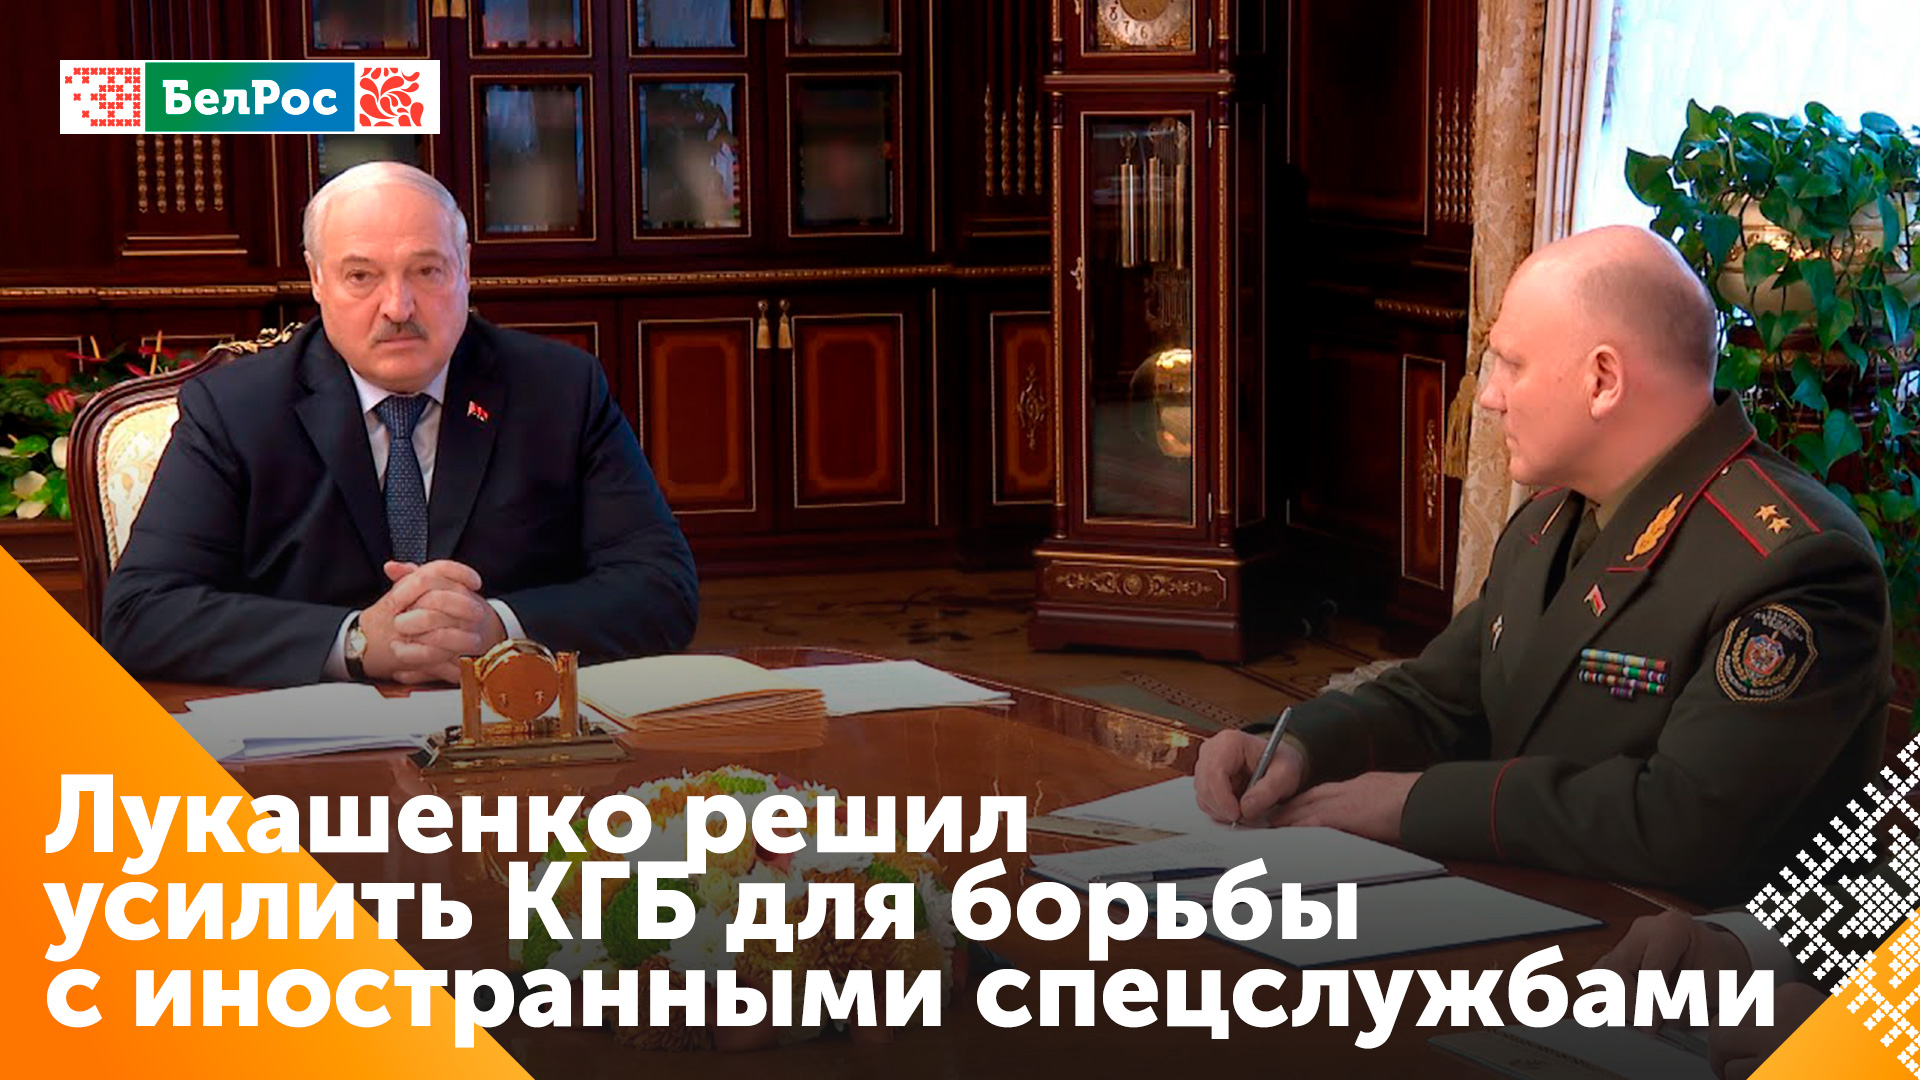 Лукашенко: необходимо решительно пресекать деятельность иностранных спецслужб в Беларуси